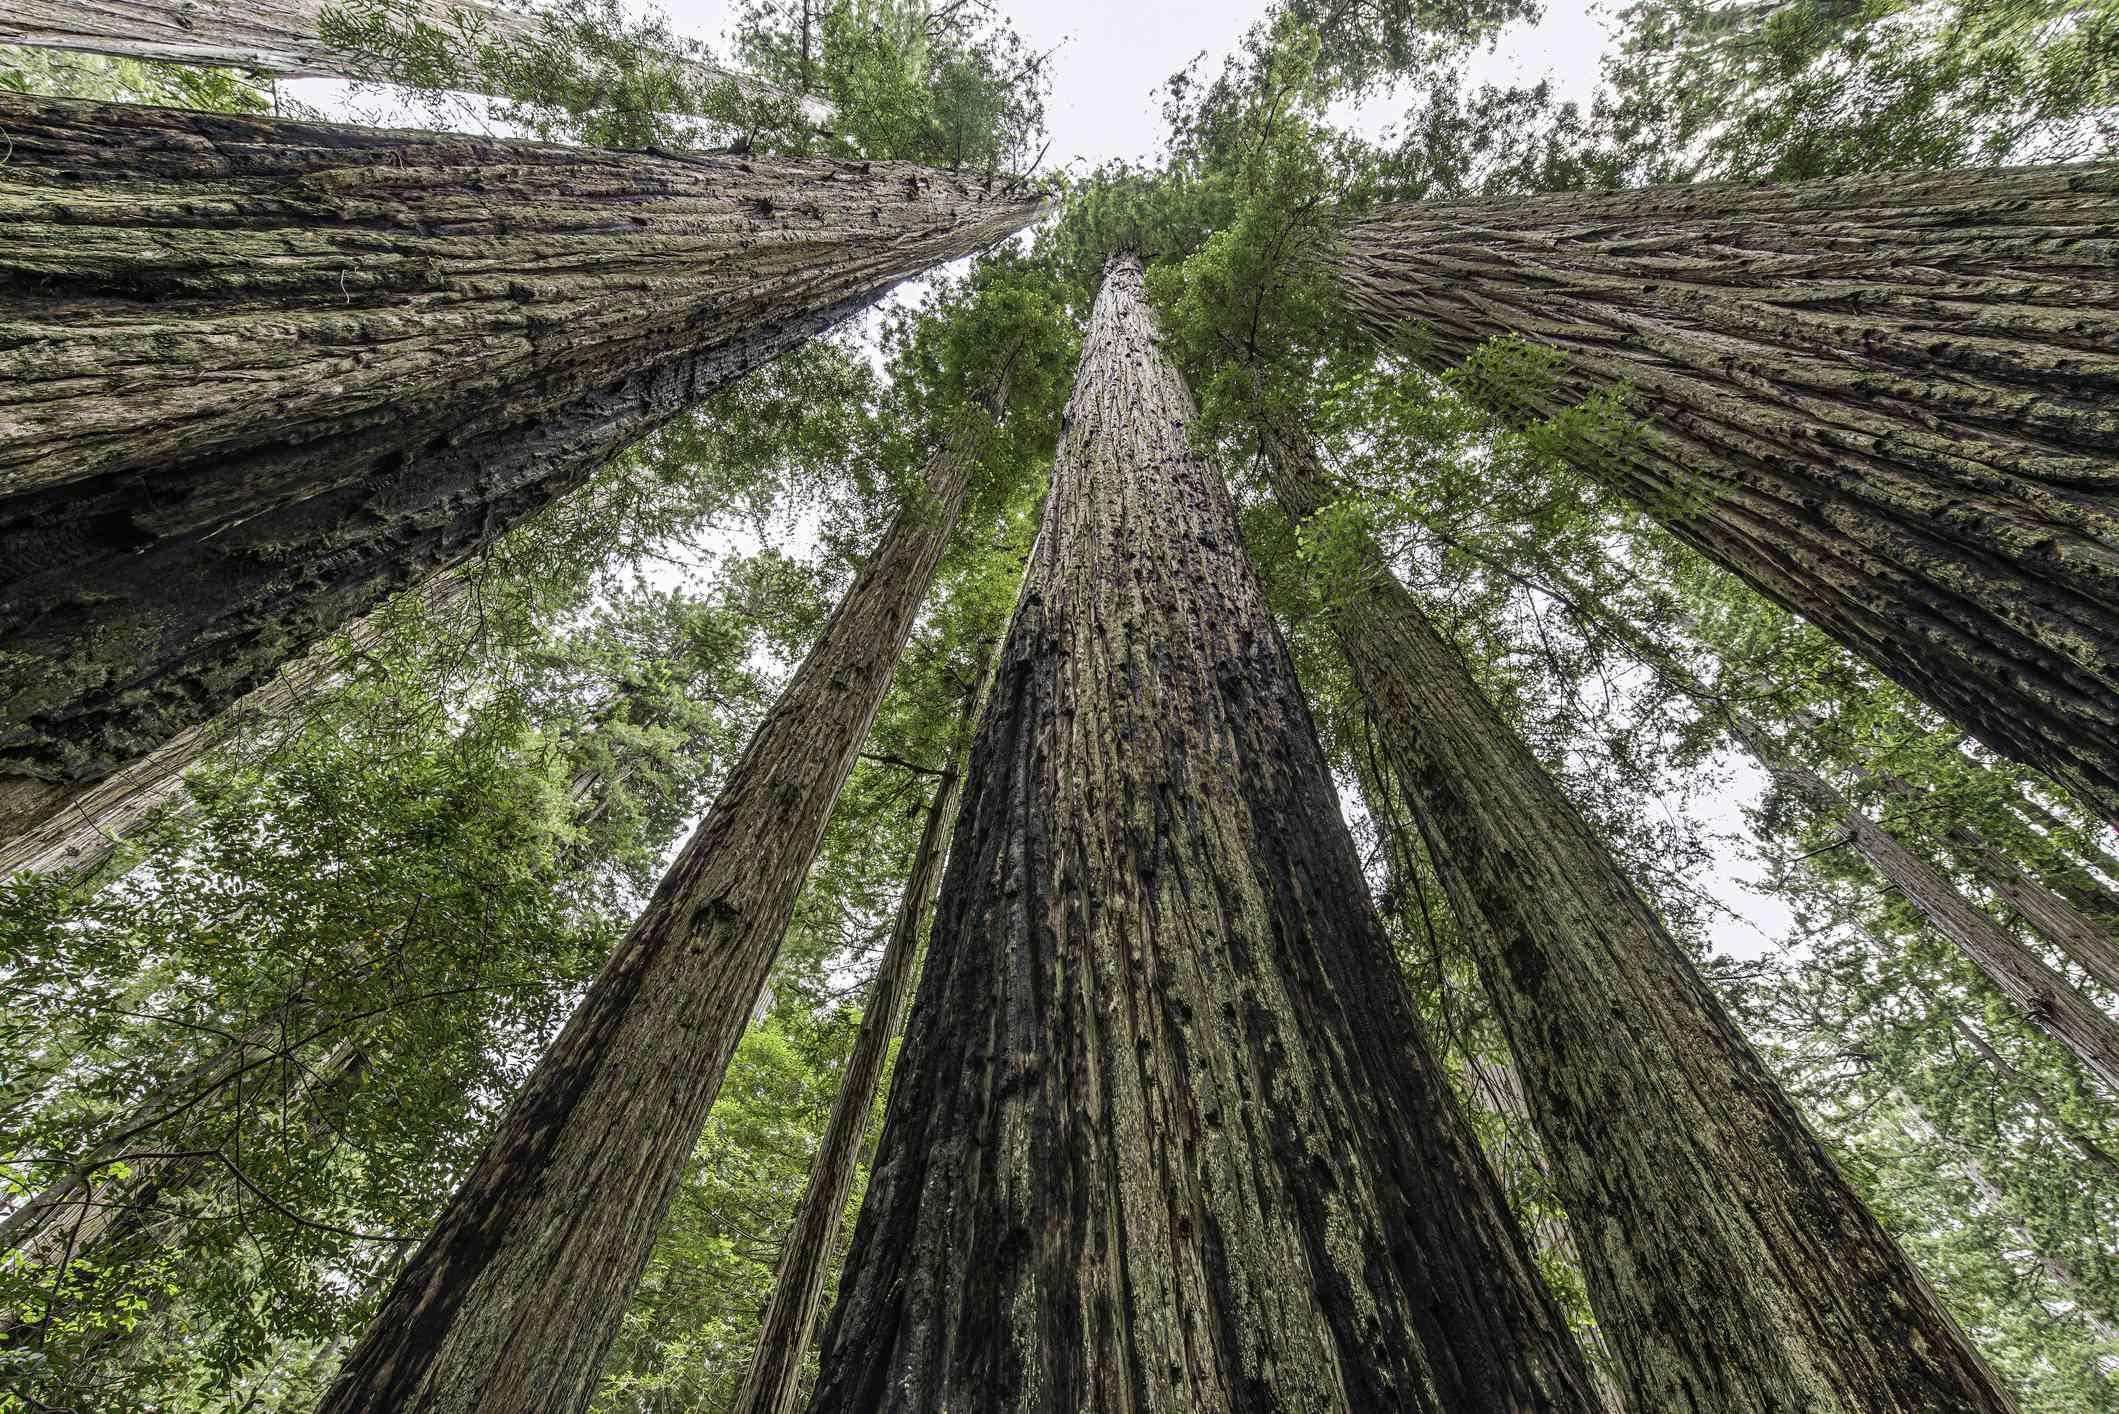 仰望加州红杉(Sequoia sempervirens)，它们是世界上最高的树木之一